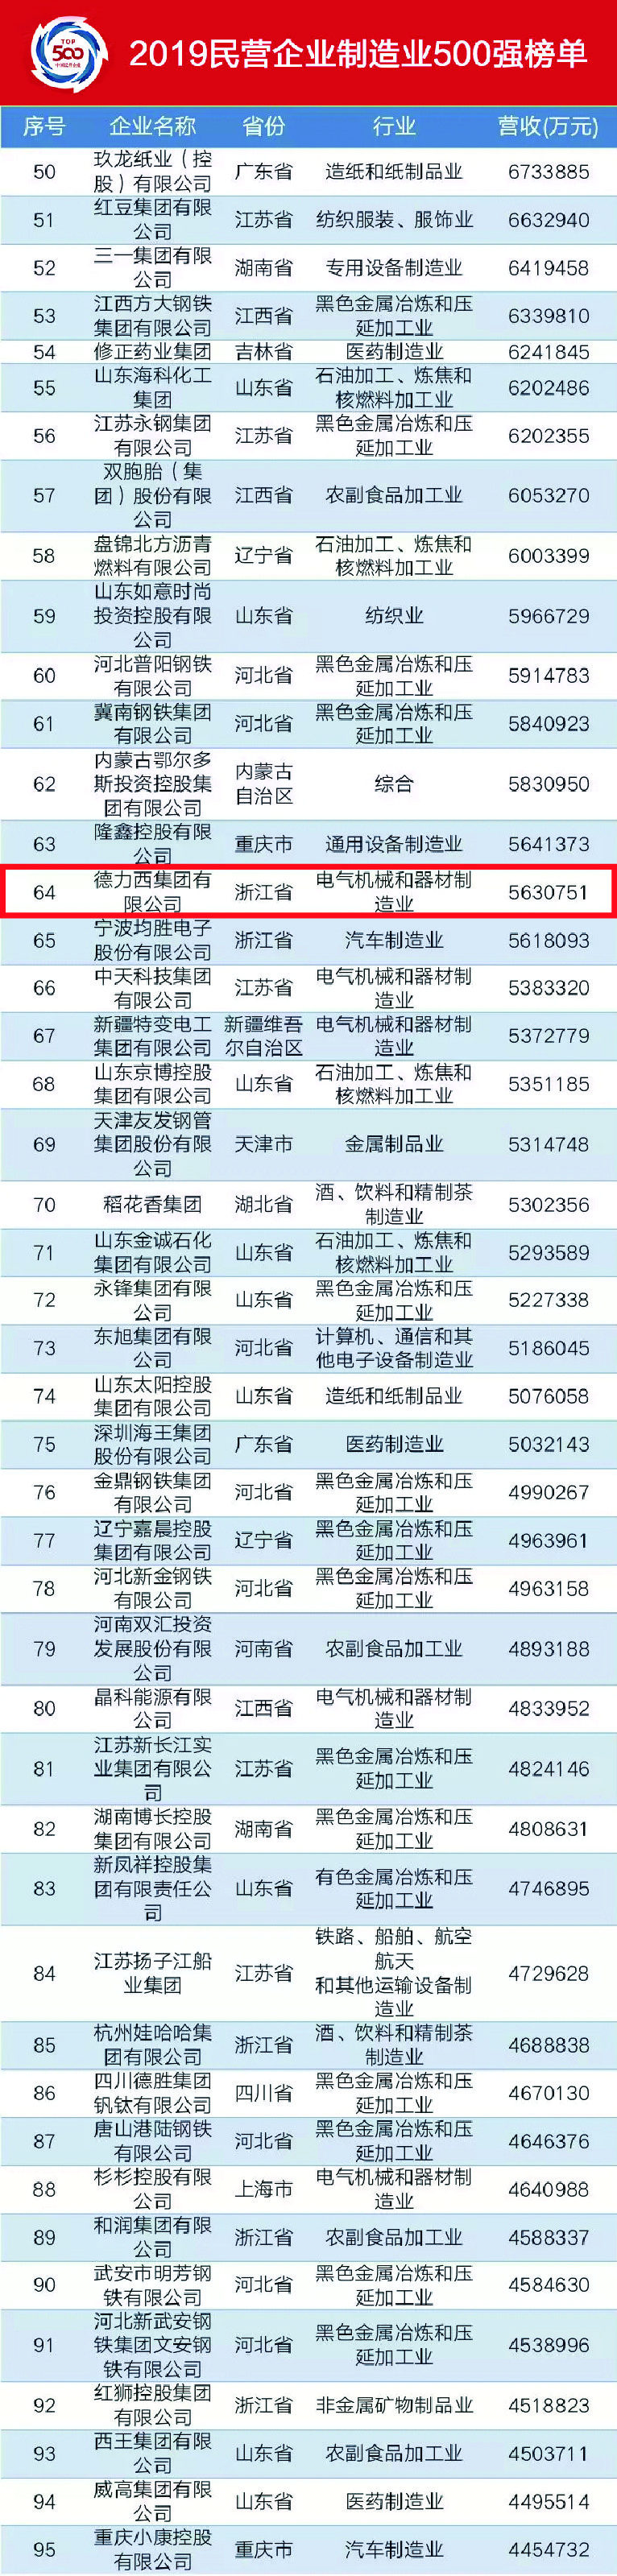 实业报国 德力西集团蝉联2019中国民营企业500强 